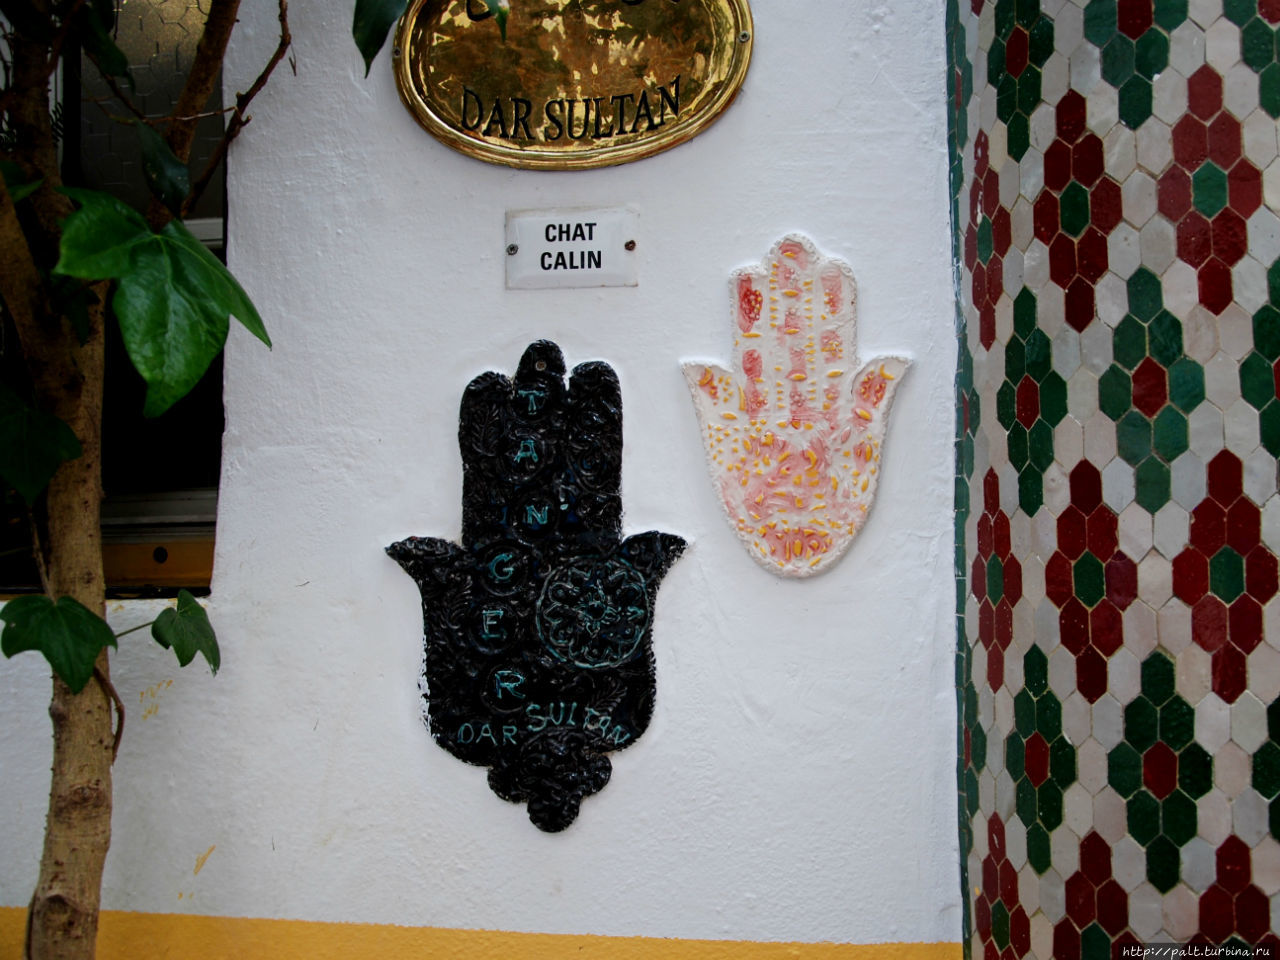 Рука Фатимы — сильный талисман от порчи и сглаза, очень популярный у мусульман. В общем, защищает от невезения. Танжер, Марокко